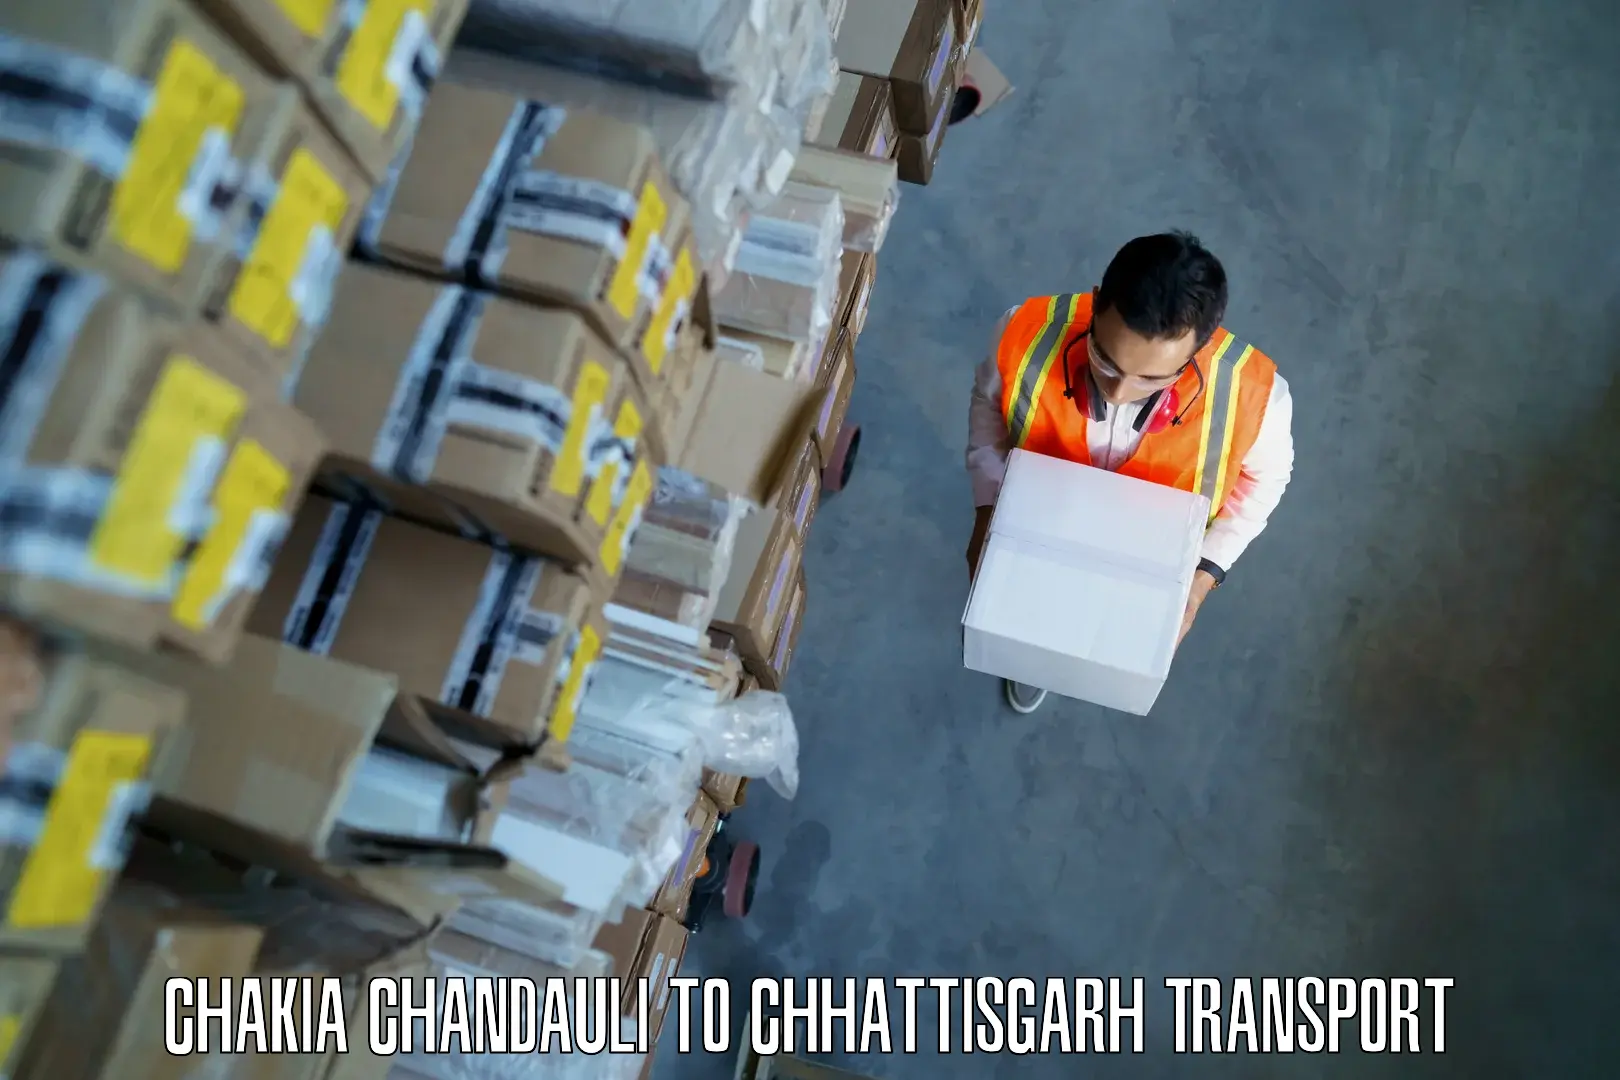 Nearest transport service Chakia Chandauli to Bhatgaon